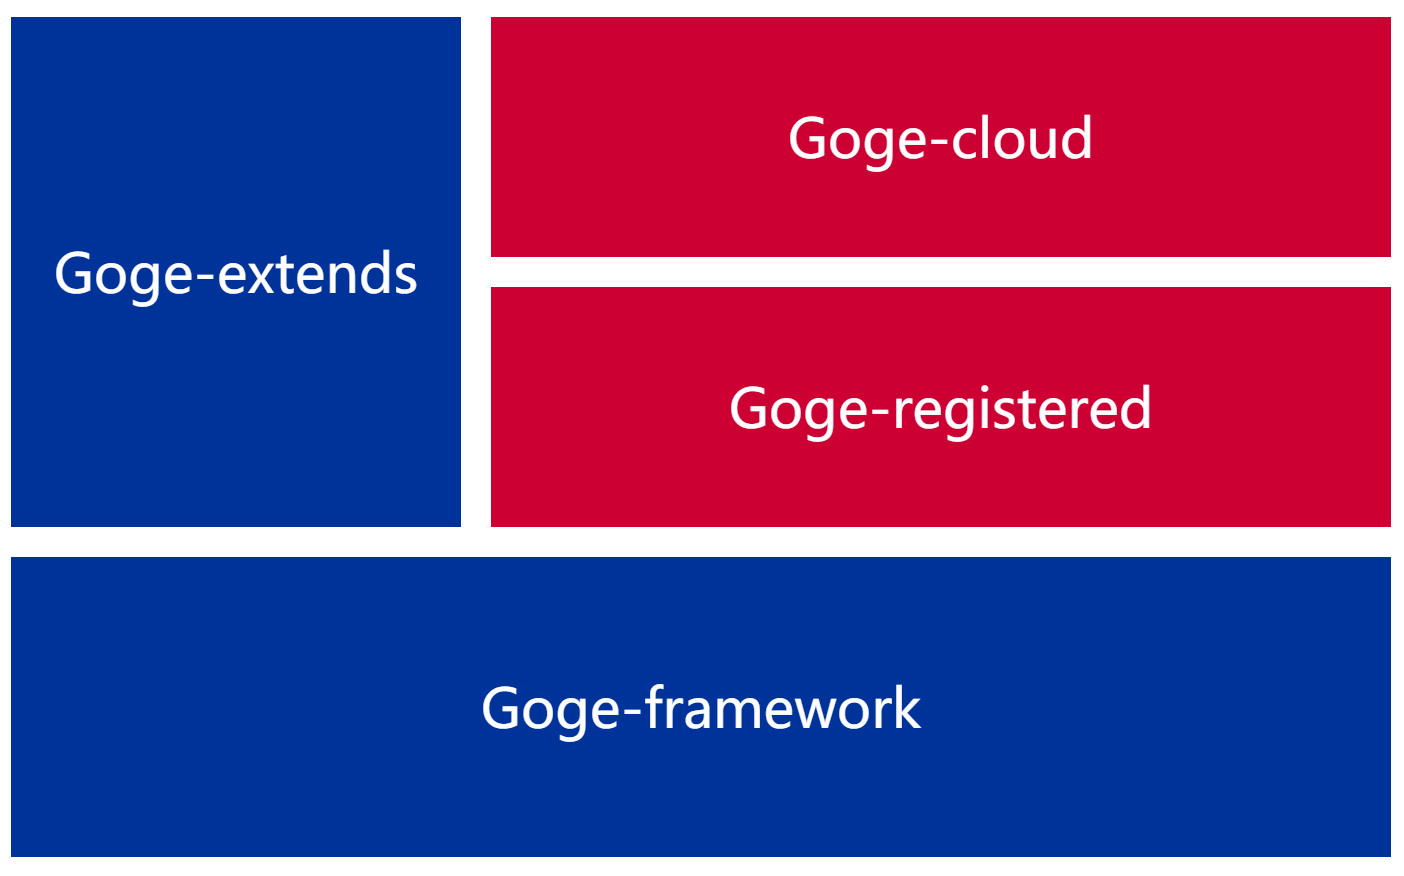 Goge framework